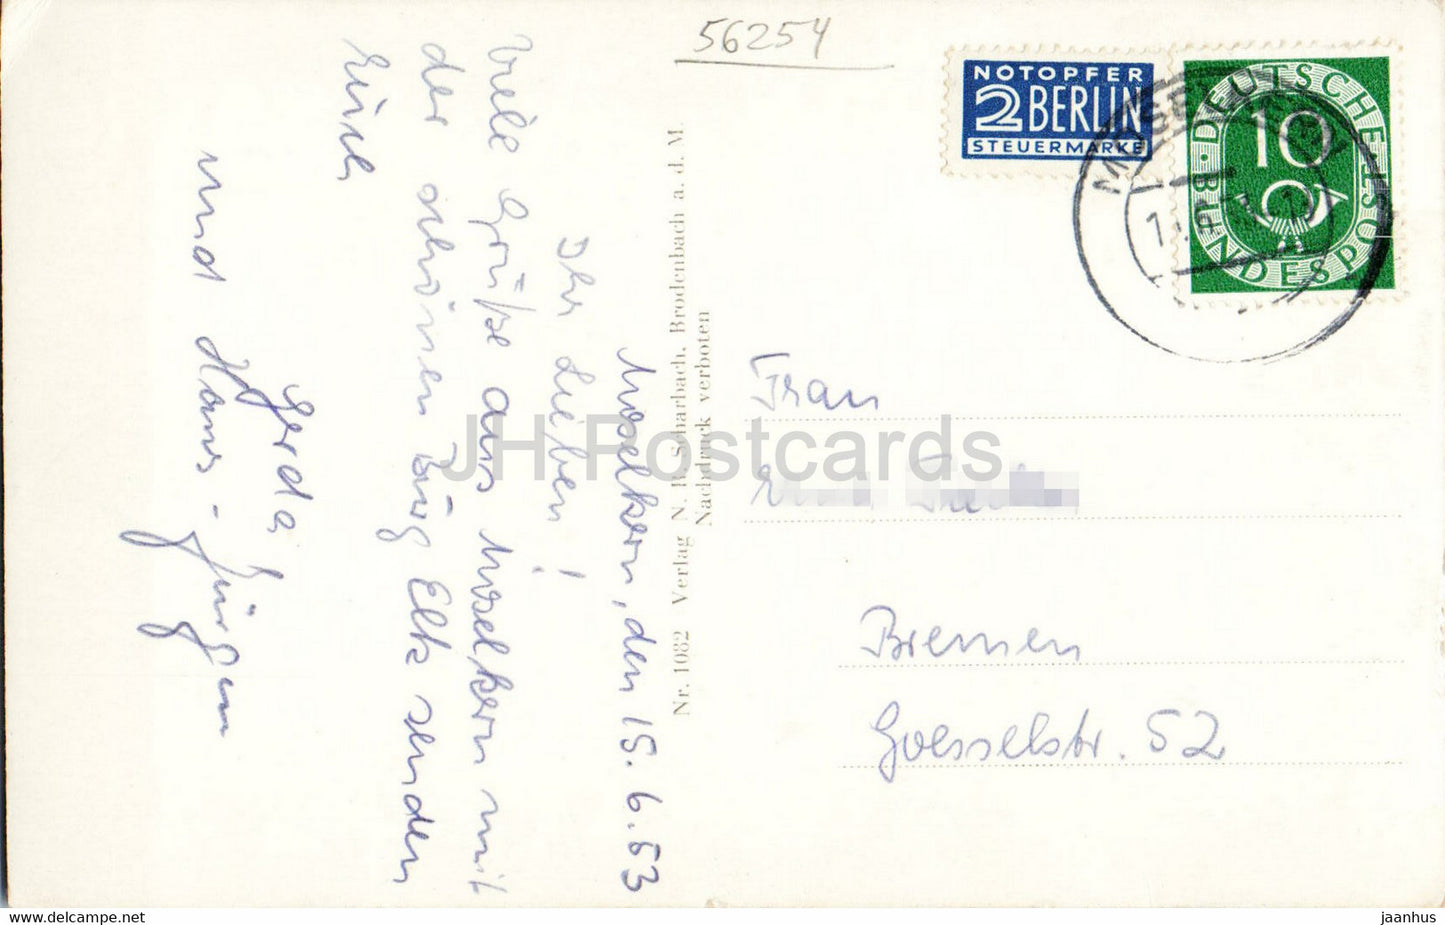 Burg Eltz - Burg - 1082 - alte Postkarte - 1953 - Deutschland - gebraucht